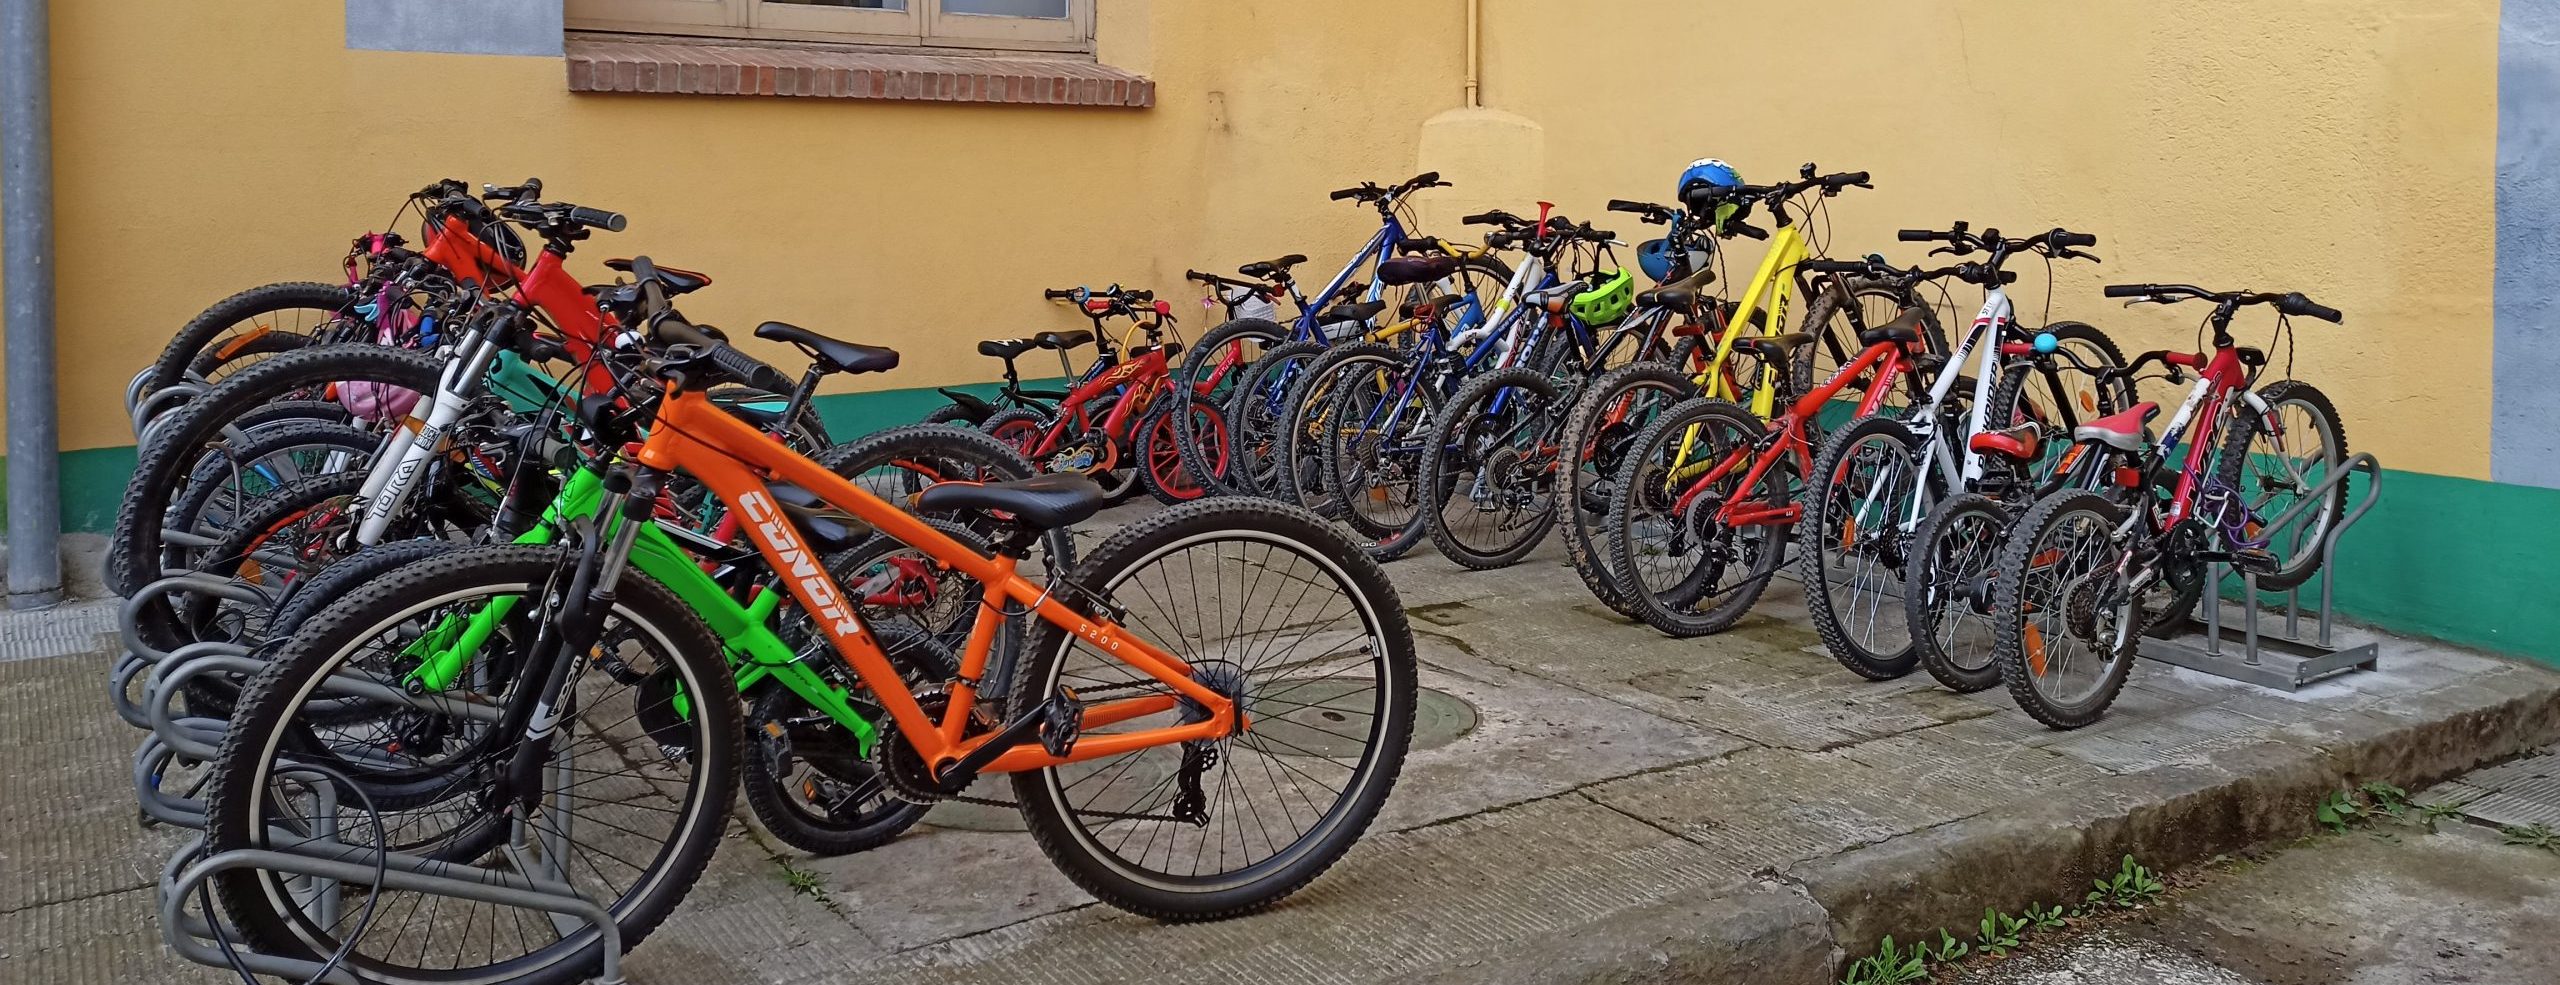 Stationnement vélo à l'intérieur d'une école pleine de vélos grâce au bikebus.